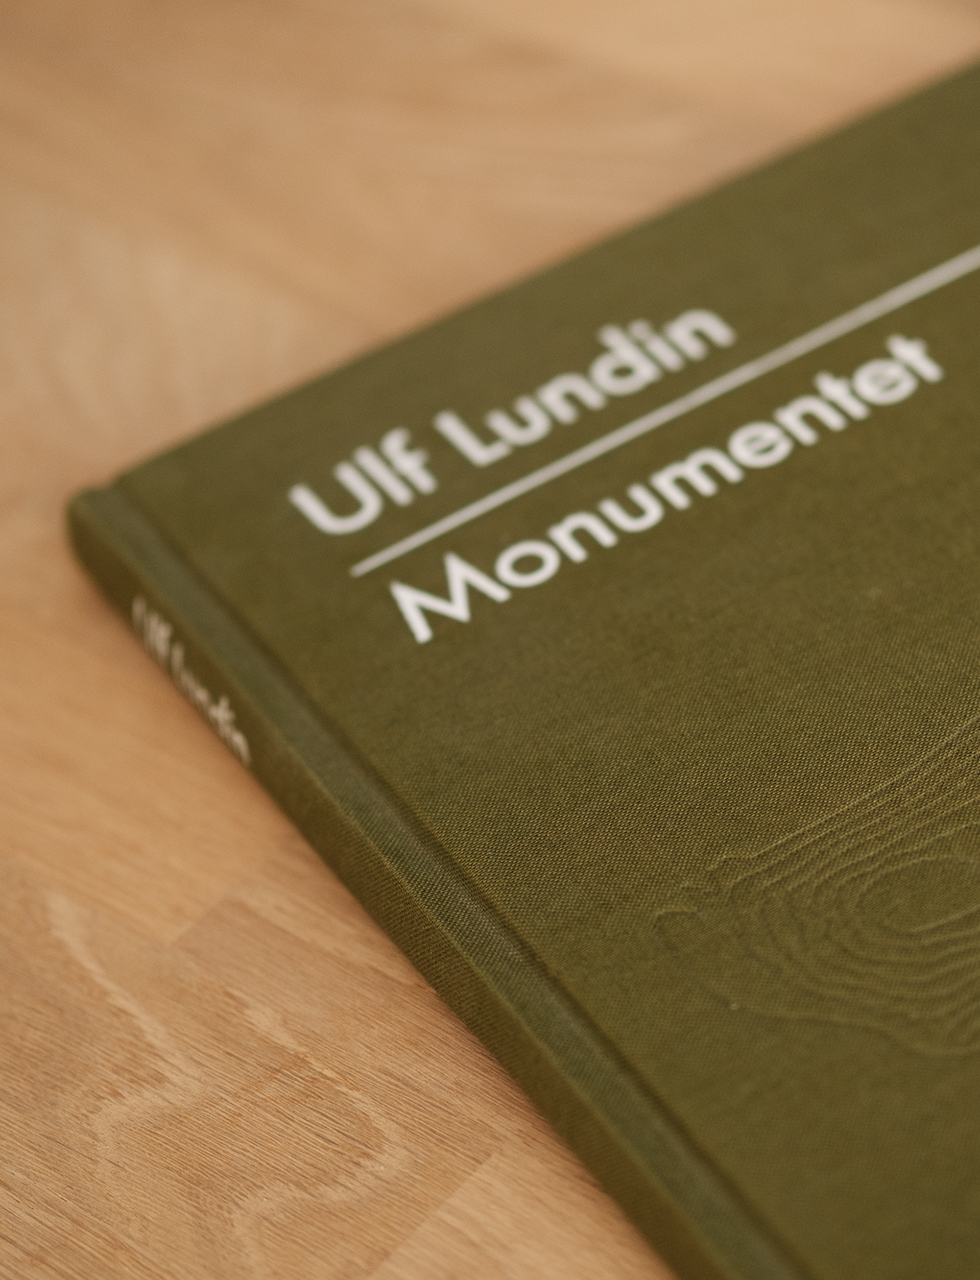 Boken Monumentet av Ulf Lundin.